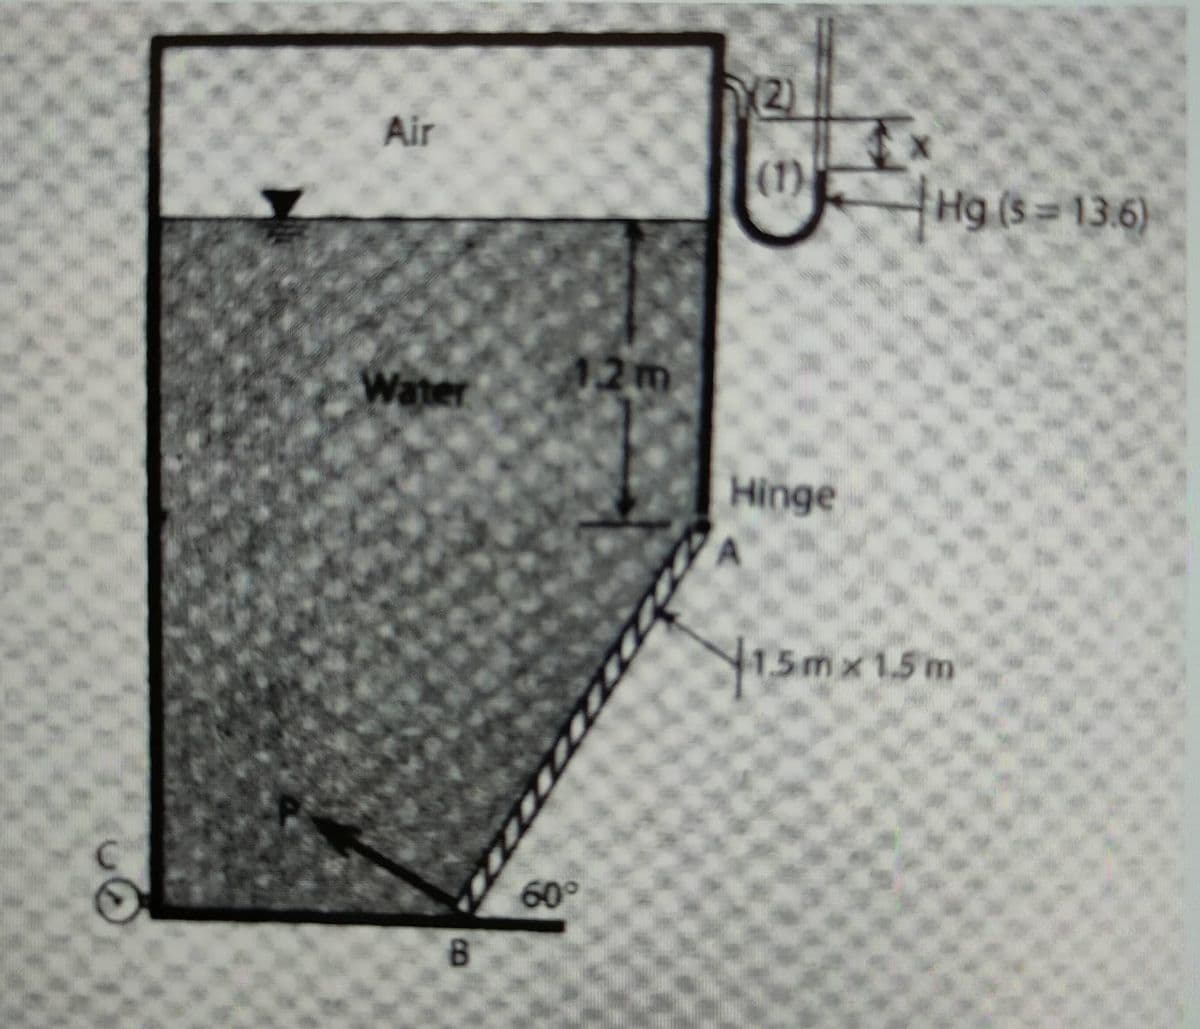 Air
Water
B
12m
60°
(2)
(1)
Hinge
Hg (s-13.6)
1.5mx 1.5 m